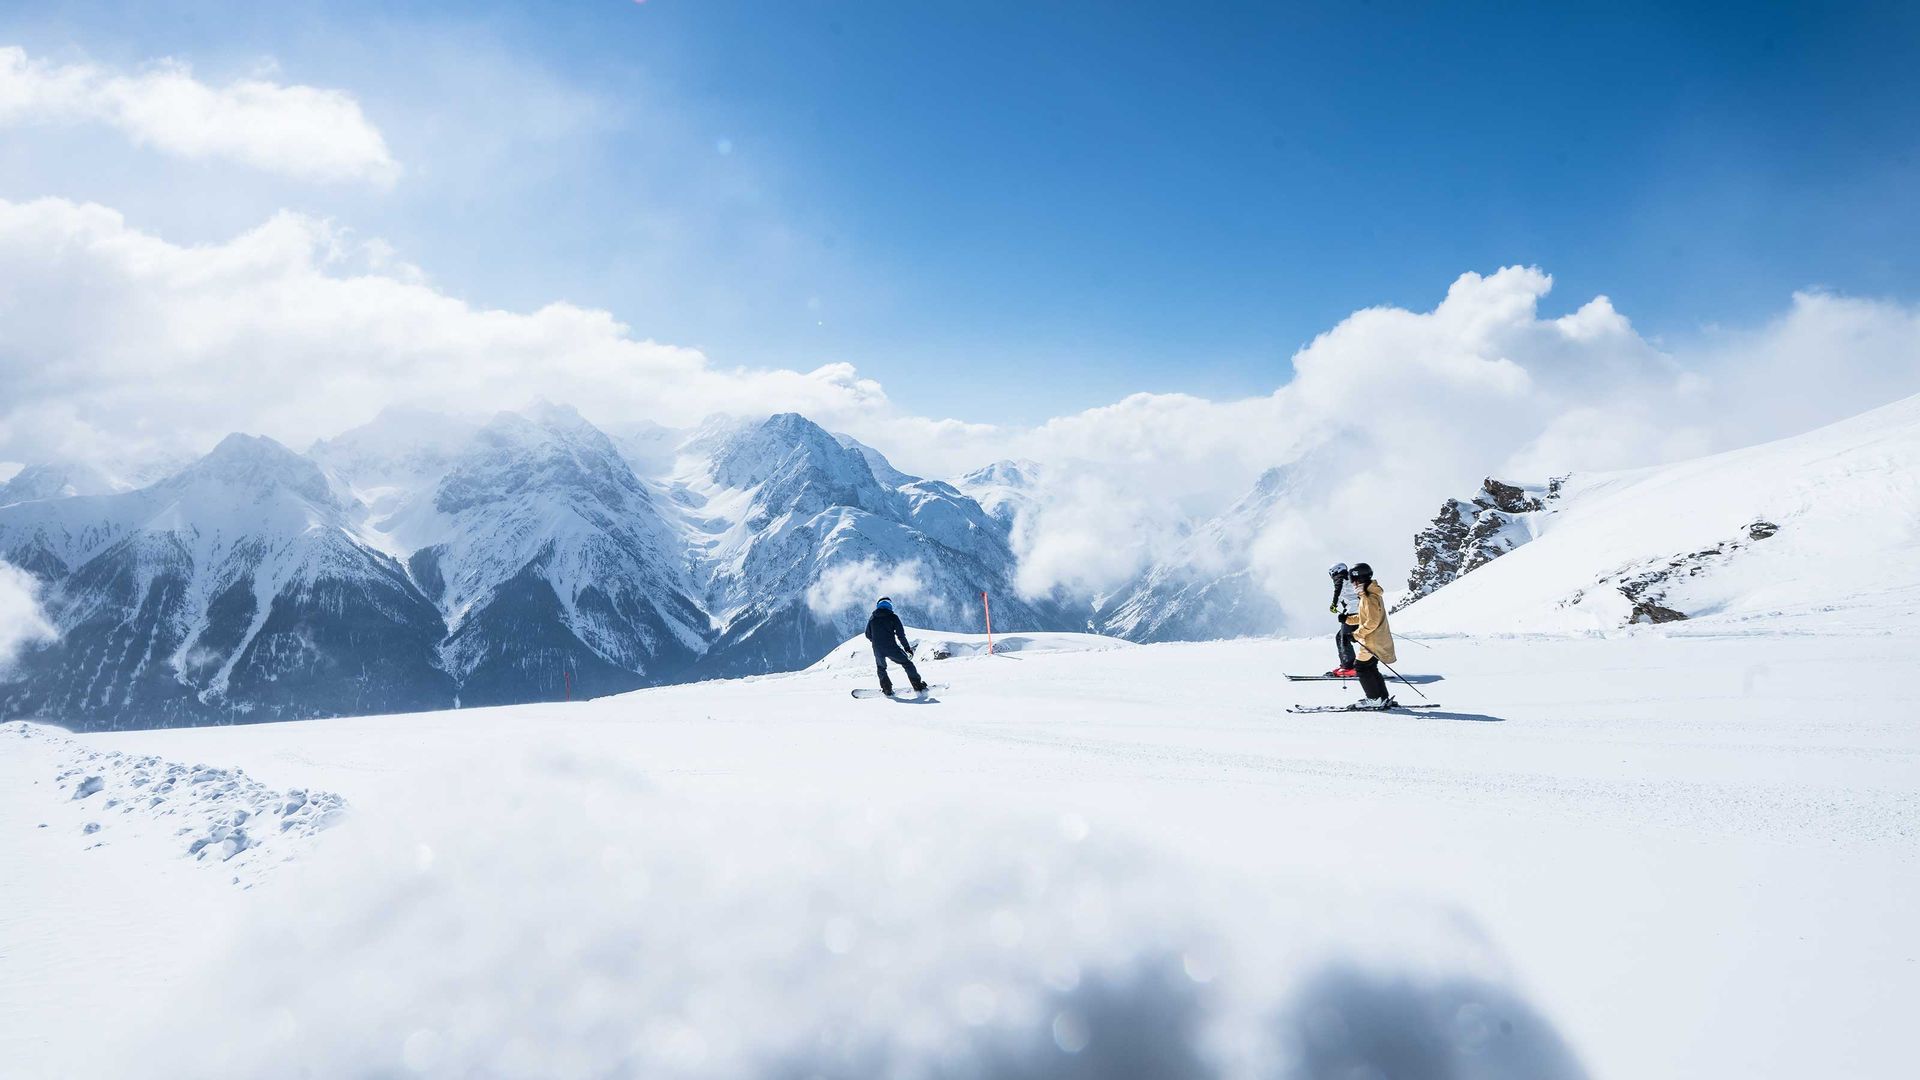 Deux skieurs descendent une pente de montagne enneigée avec des pics montagneux et des nuages en arrière-plan.